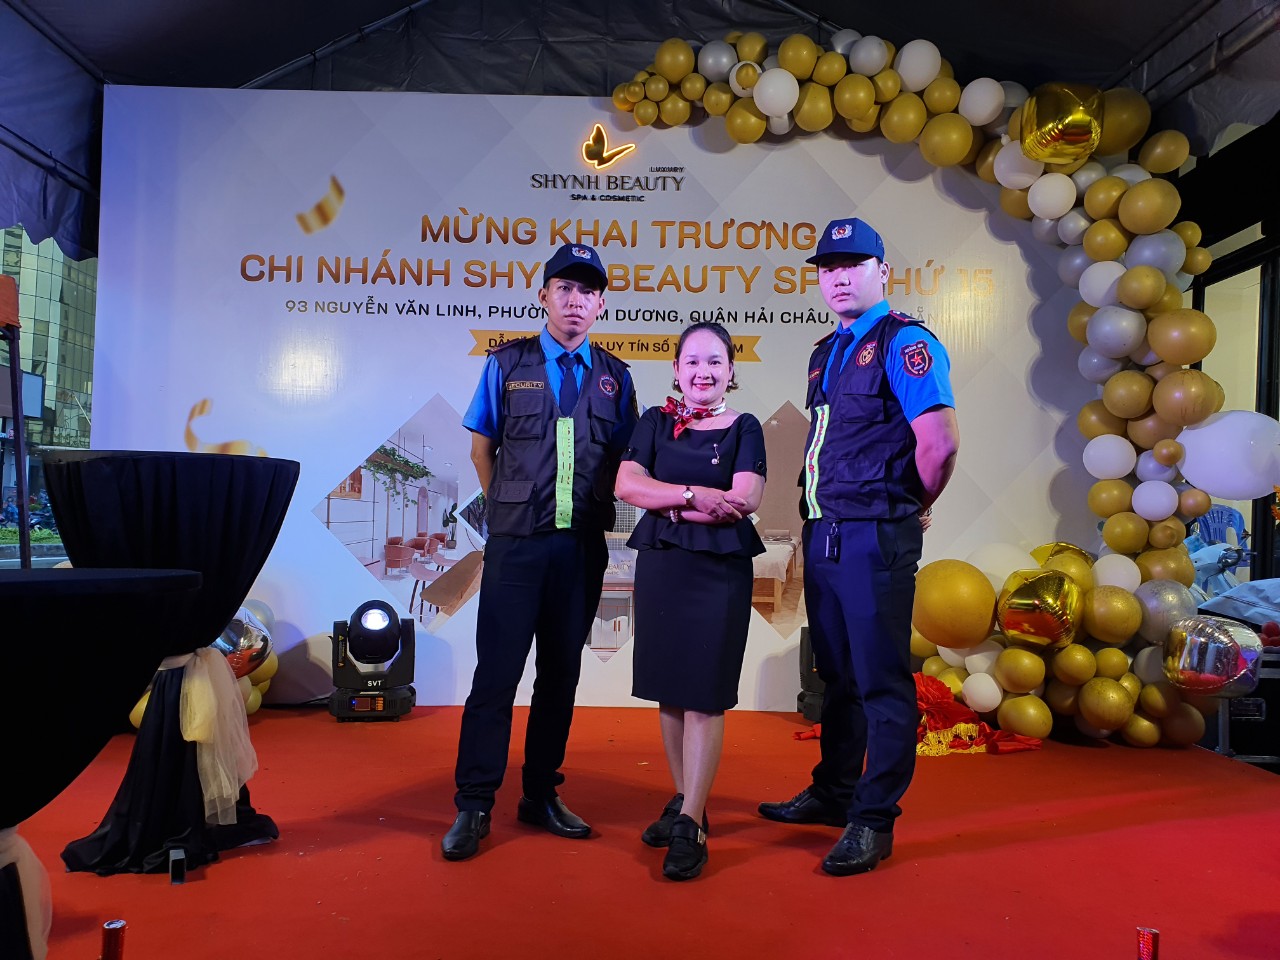 Bí quyết lựa chọn dịch vụ bảo vệ sự kiện chất lượng tốt tại Đà Nẵng